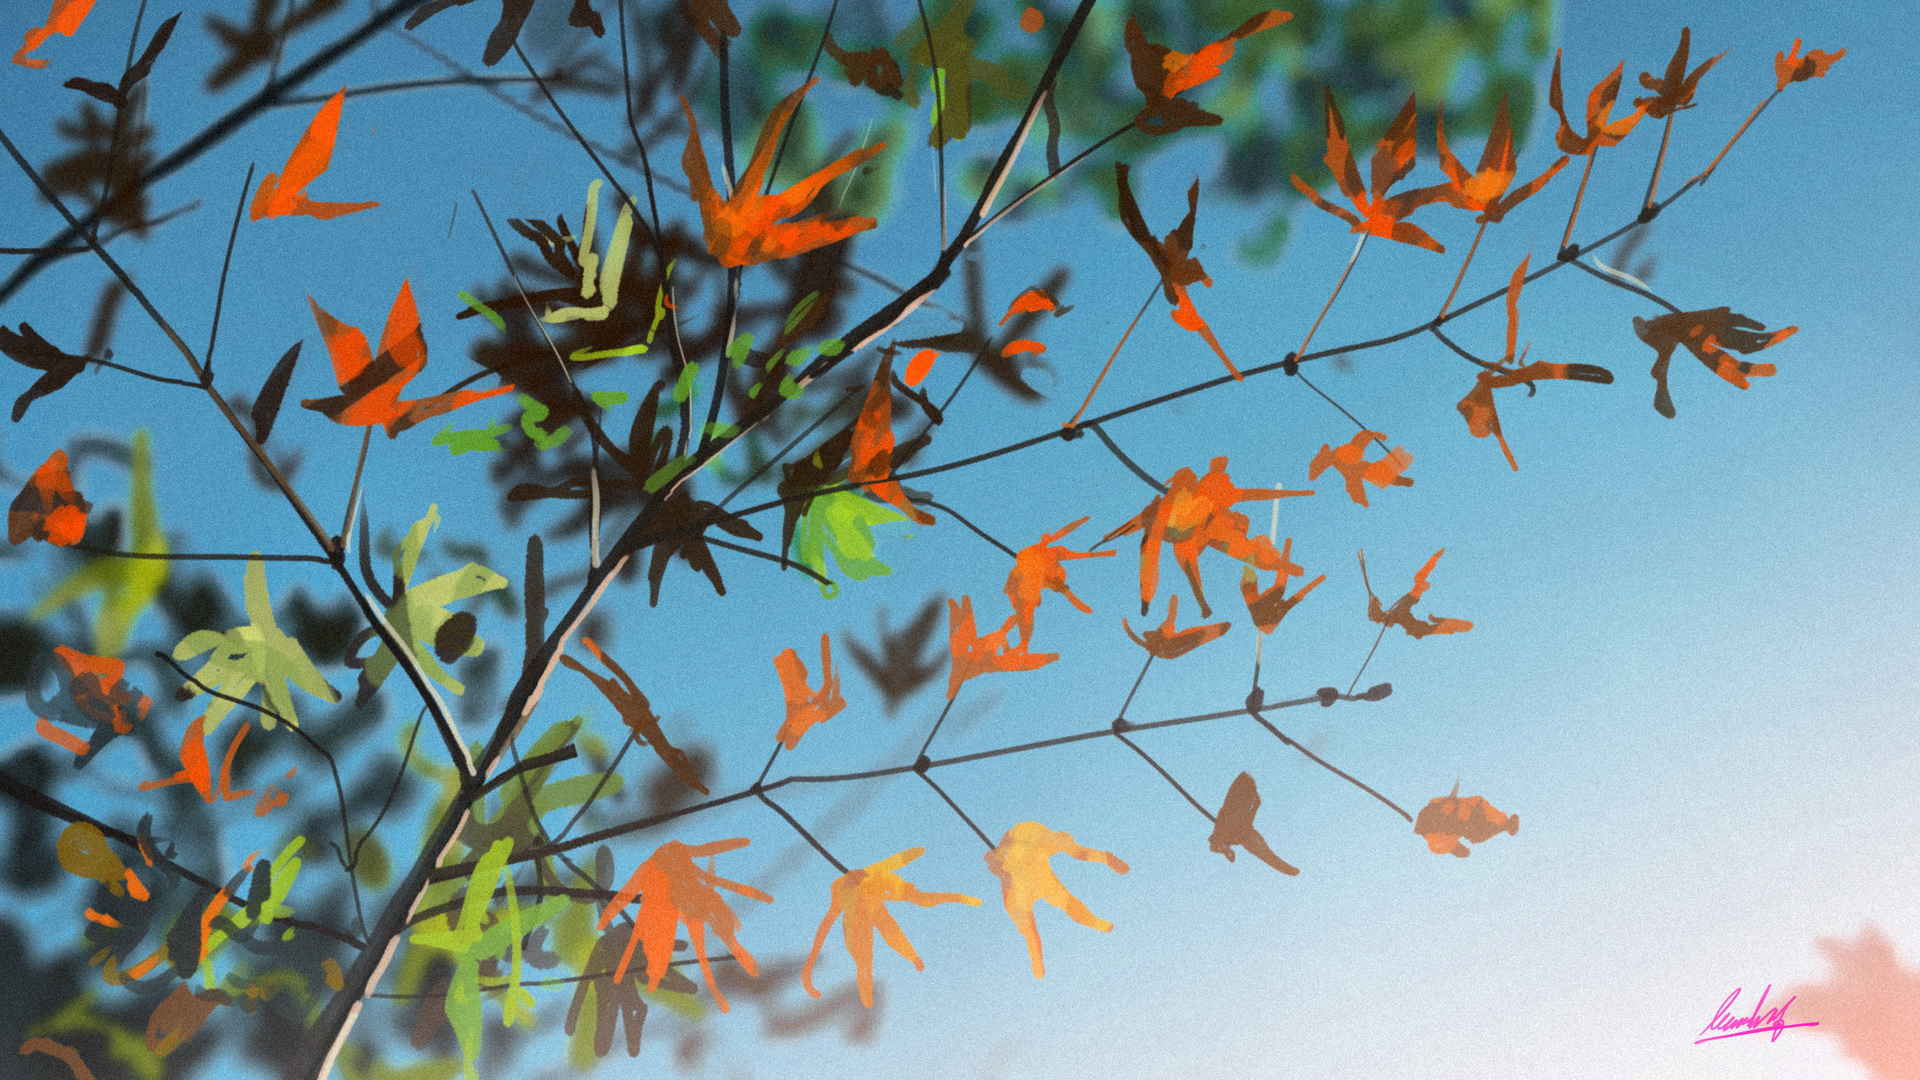 深秋枫叶让人看了就静心的图片大全